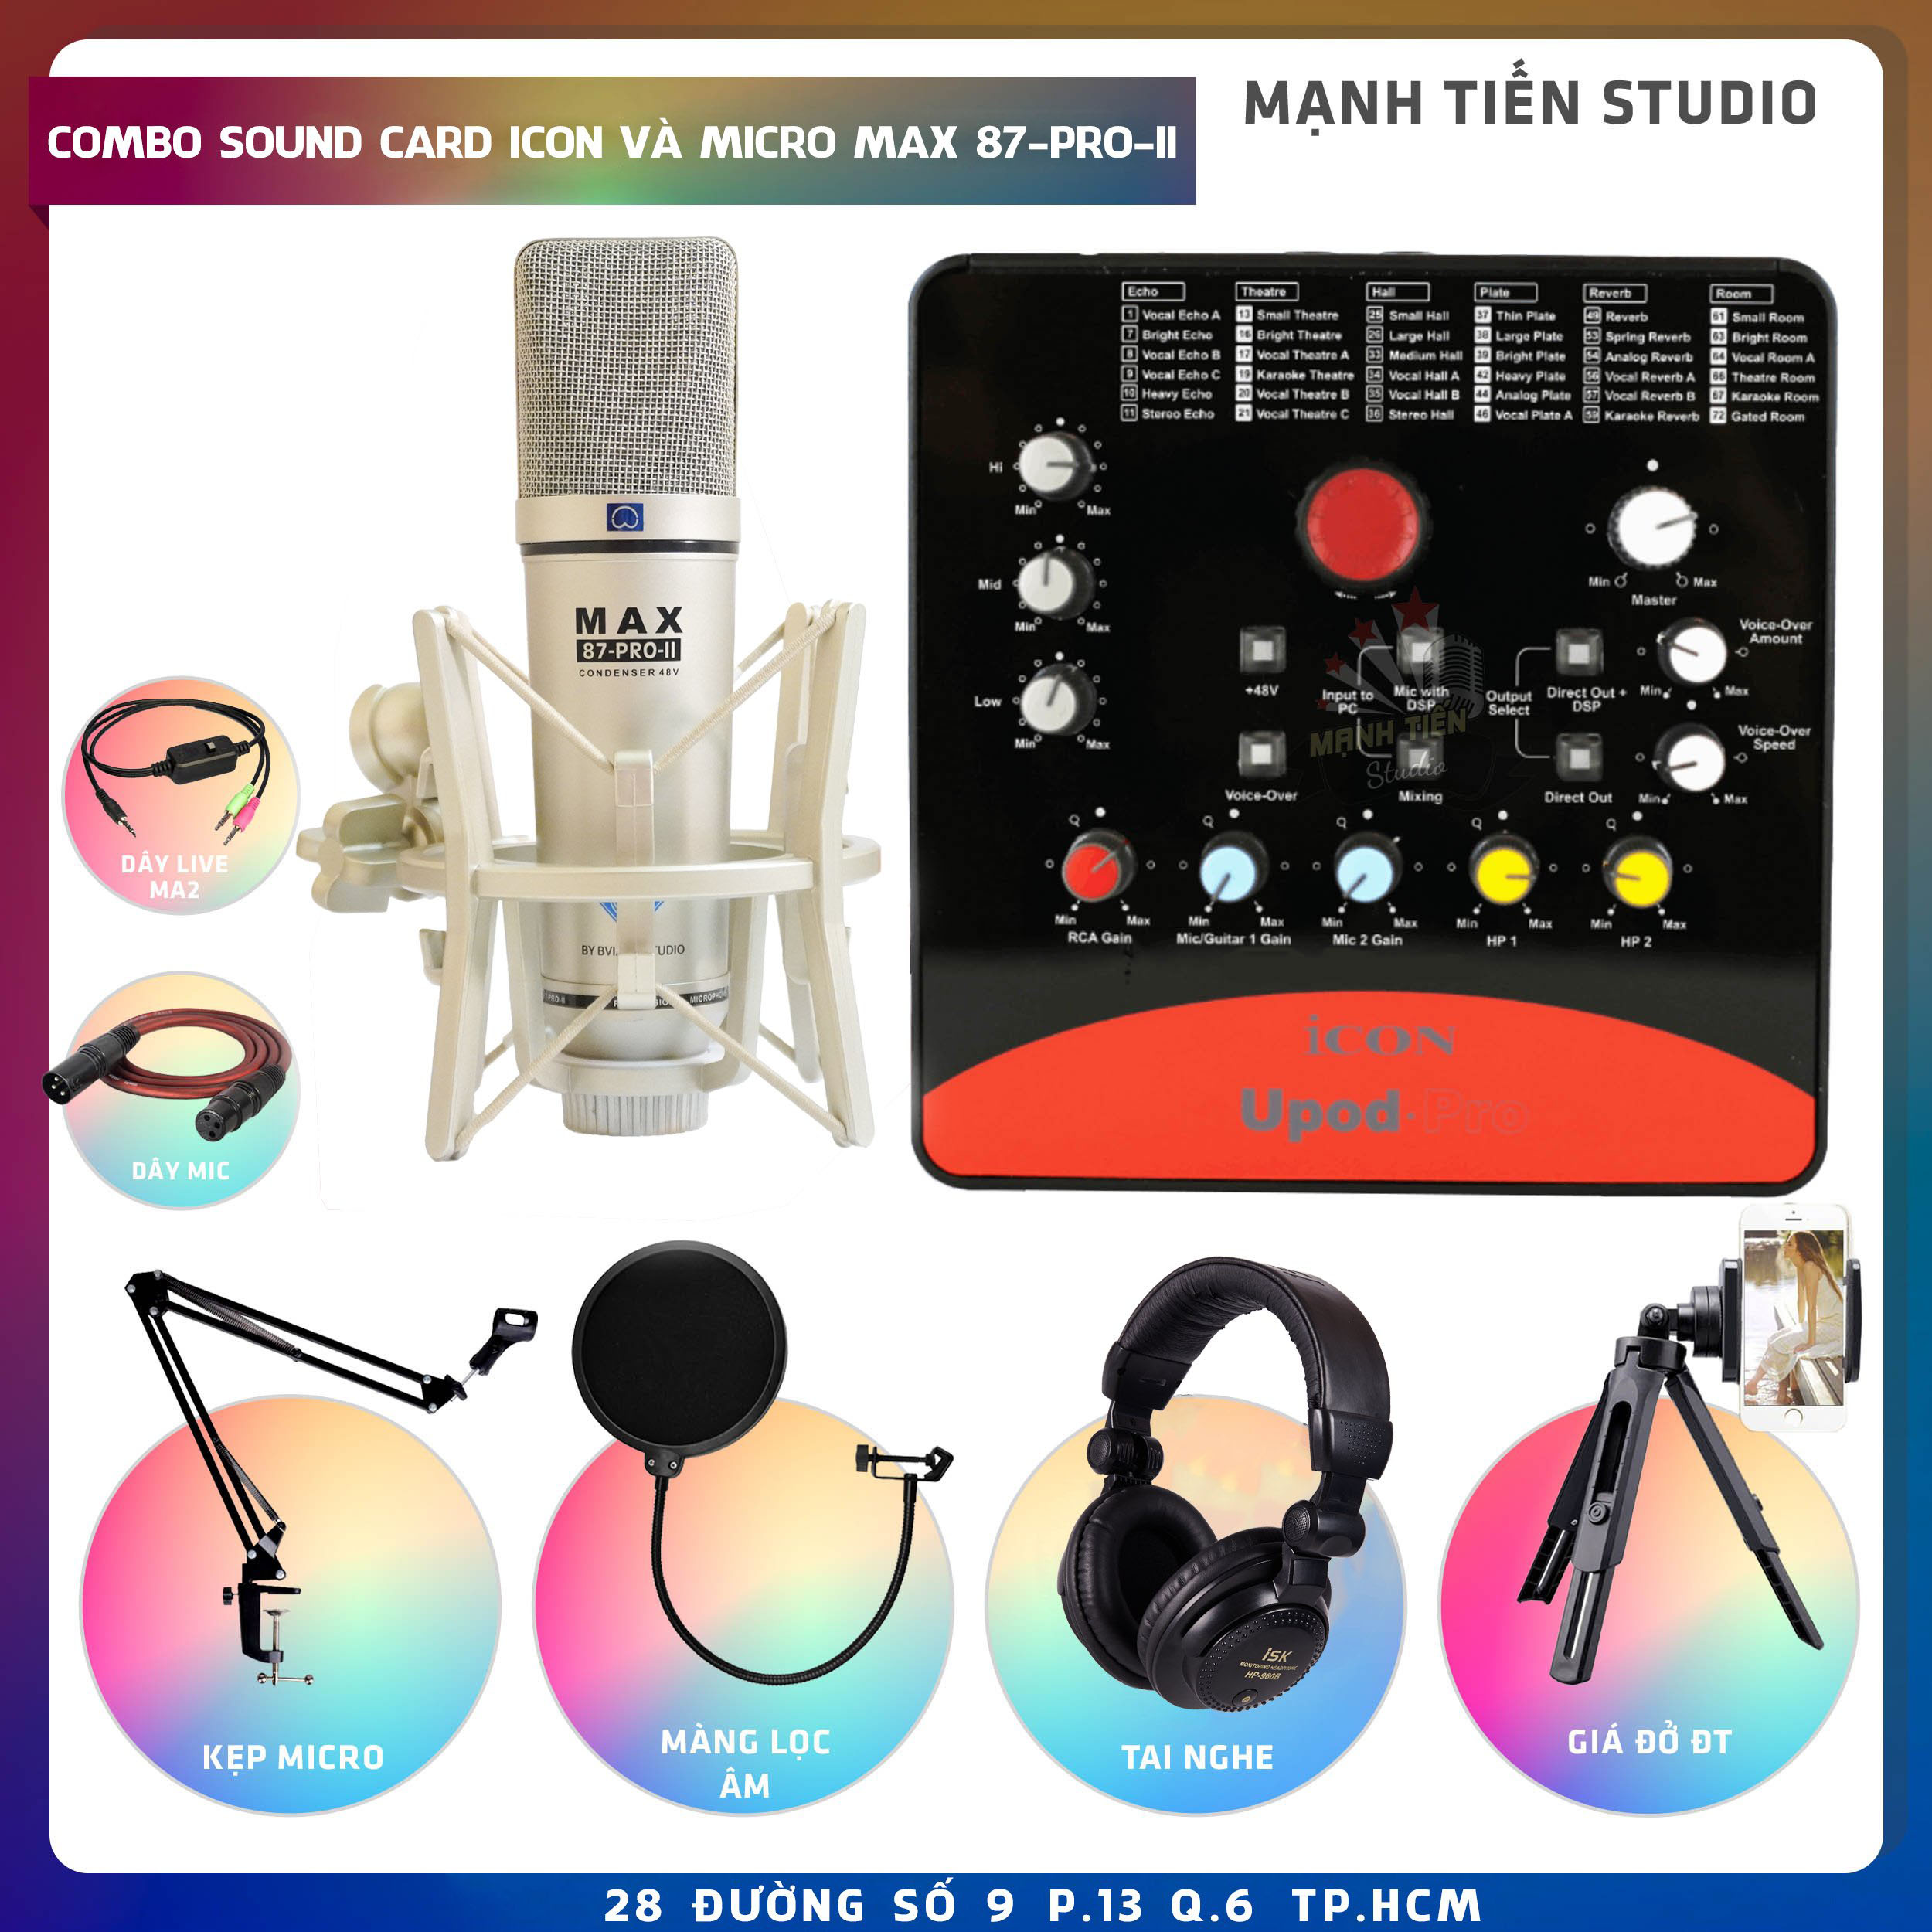 Combo thu âm, livestream Micro Max 87-Pro-II, Sound card Icon Upod Pro - Kèm full phụ kiện kẹp micro, màng lọc, tai nghe, giá đỡ ĐT, dây canon, dây ma2 - Hỗ trợ thu âm, karaoke online chuyên nghiệp - Hàng nhập khẩu